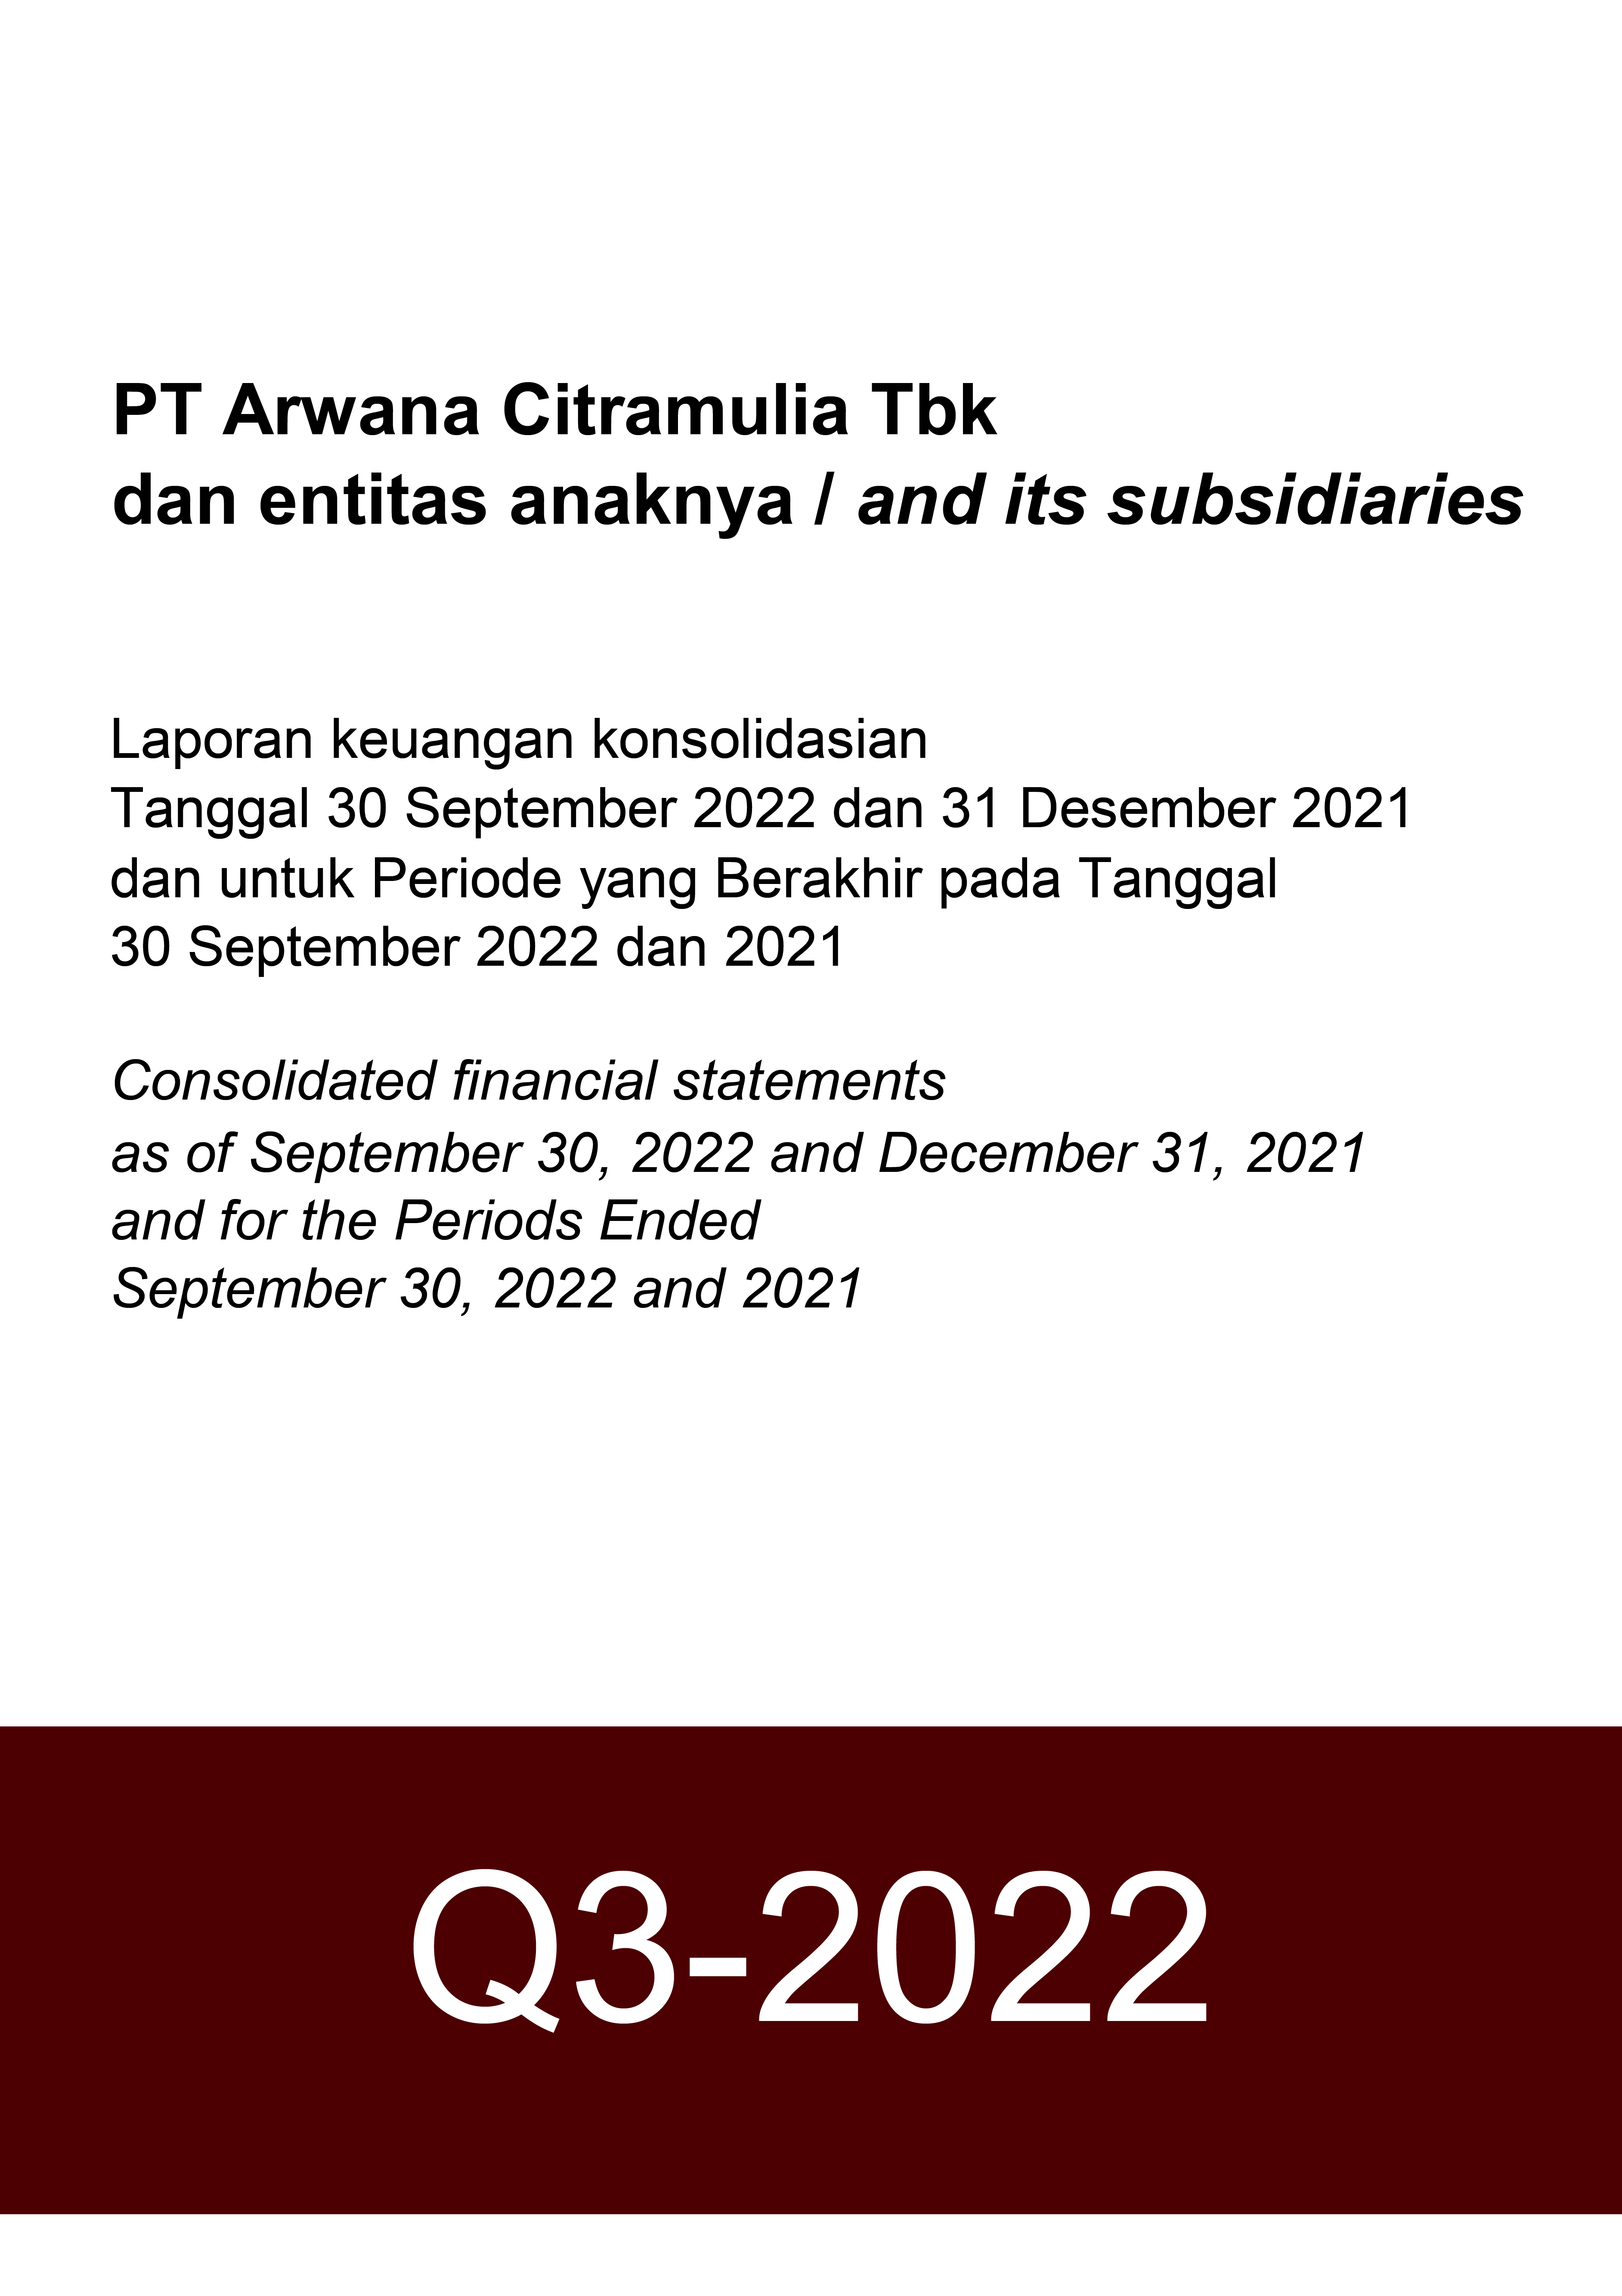 Financial Report 2022-Q3